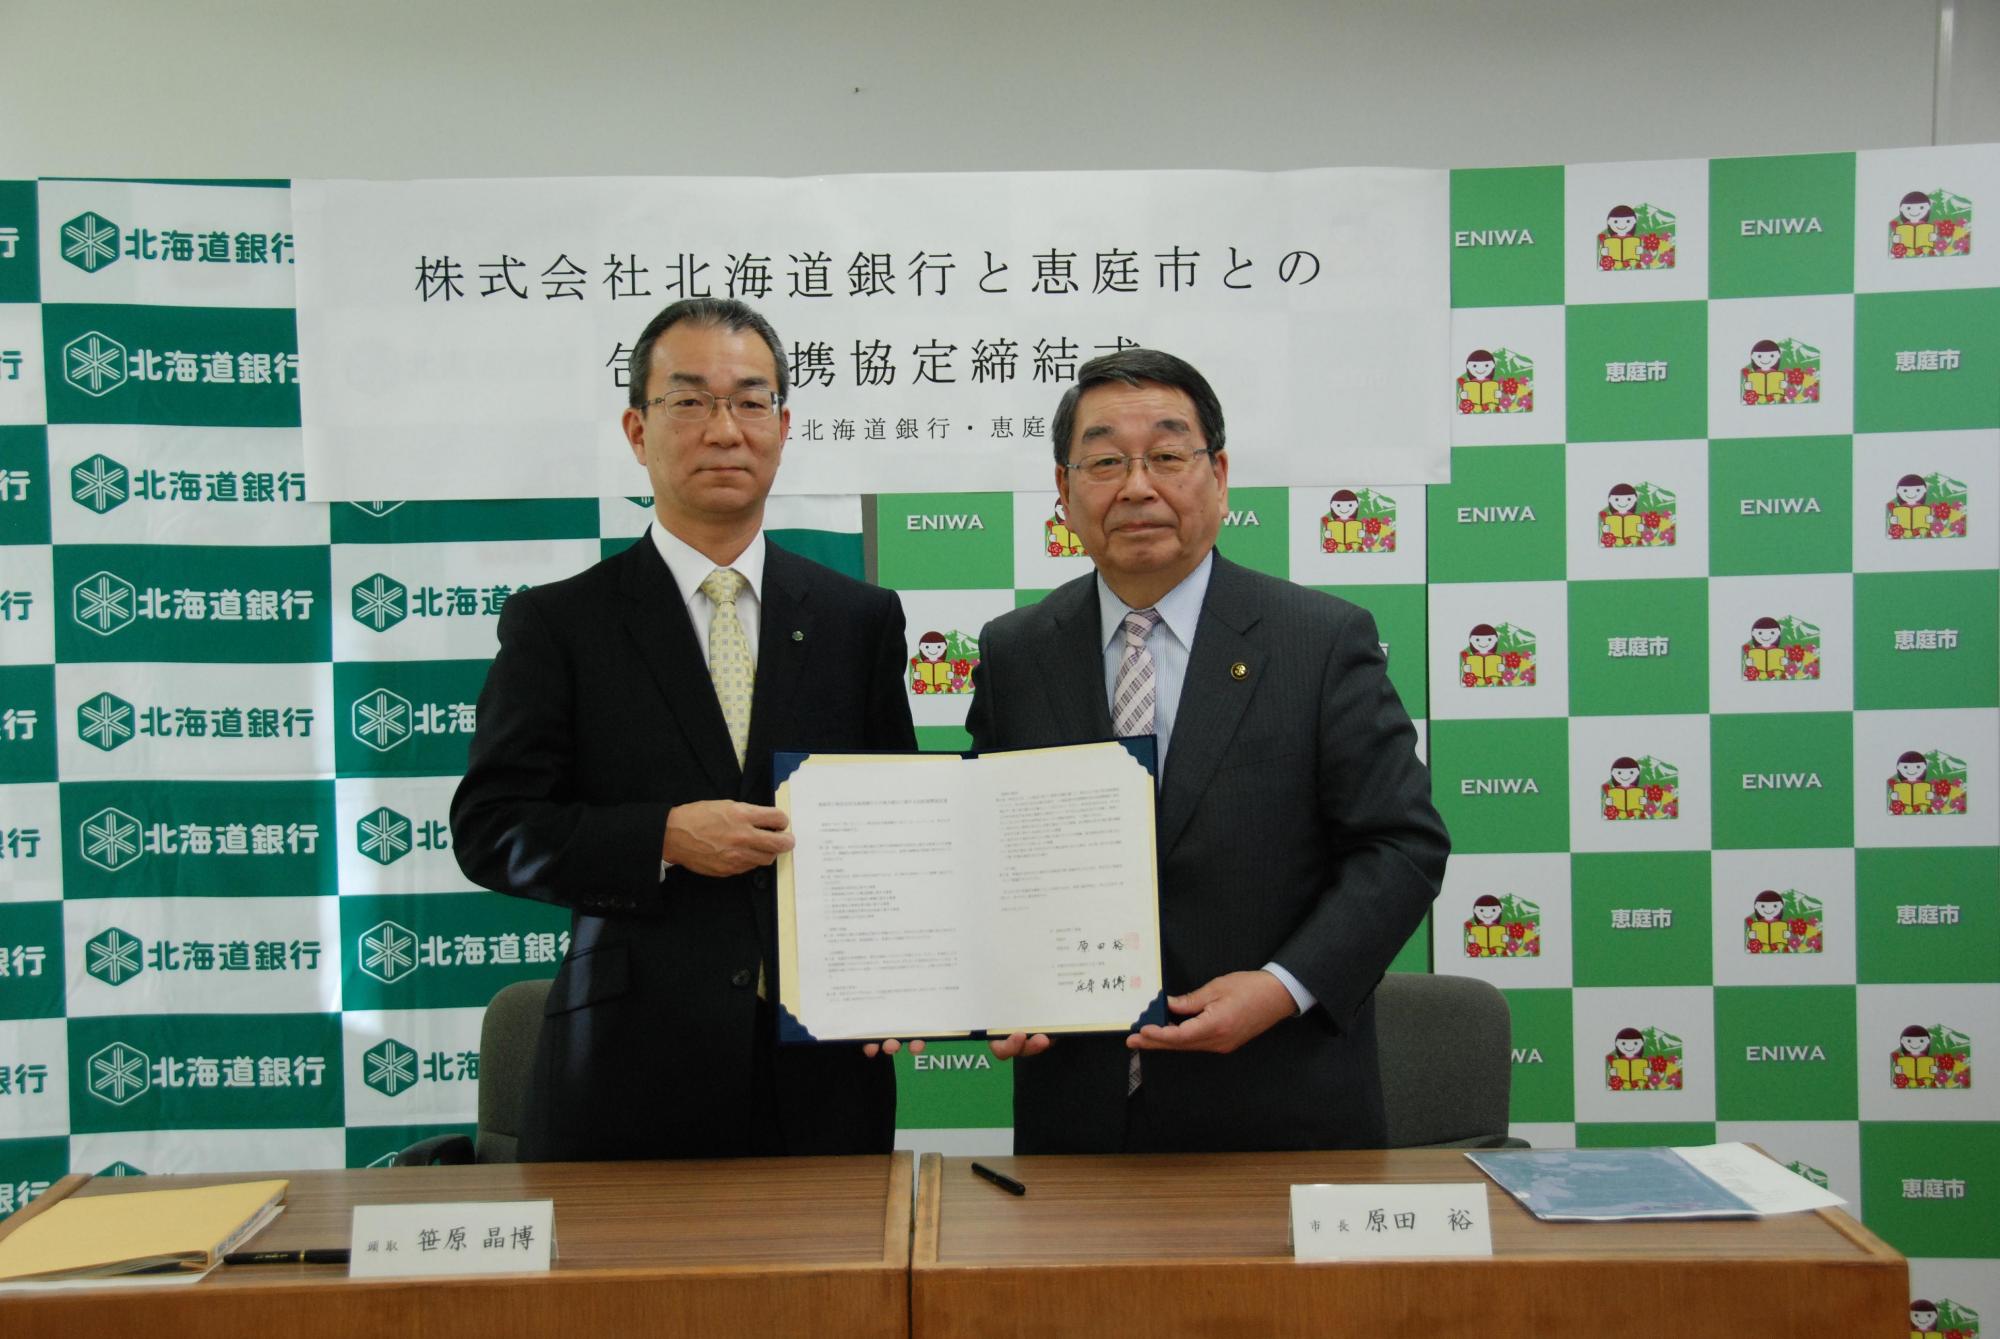 包括連携協定締結式にて北海道銀行の笠原晶博氏と恵庭市長の原田裕氏が包括連携協定書を持っている写真